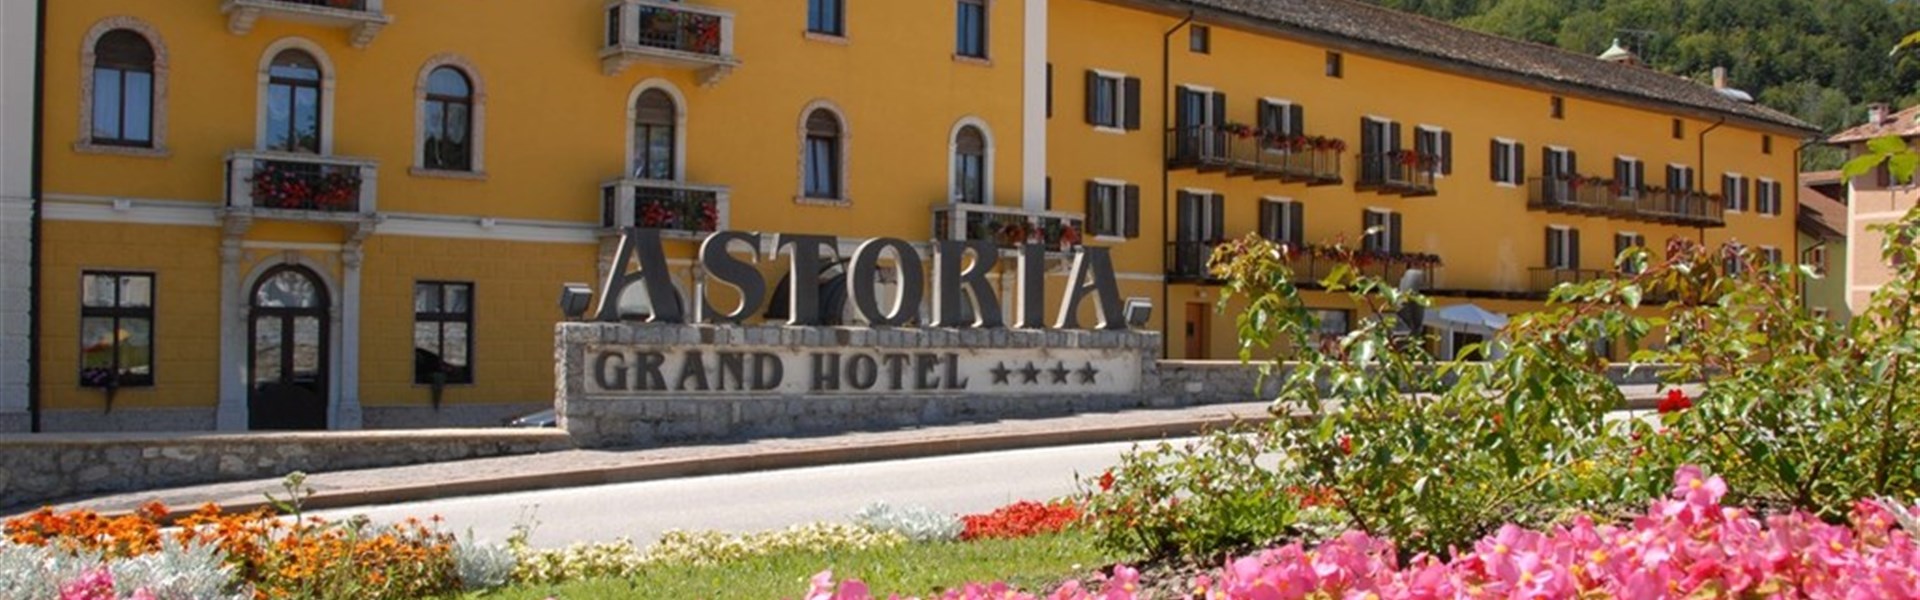 Marco Polo - Grand Hotel Astoria - 